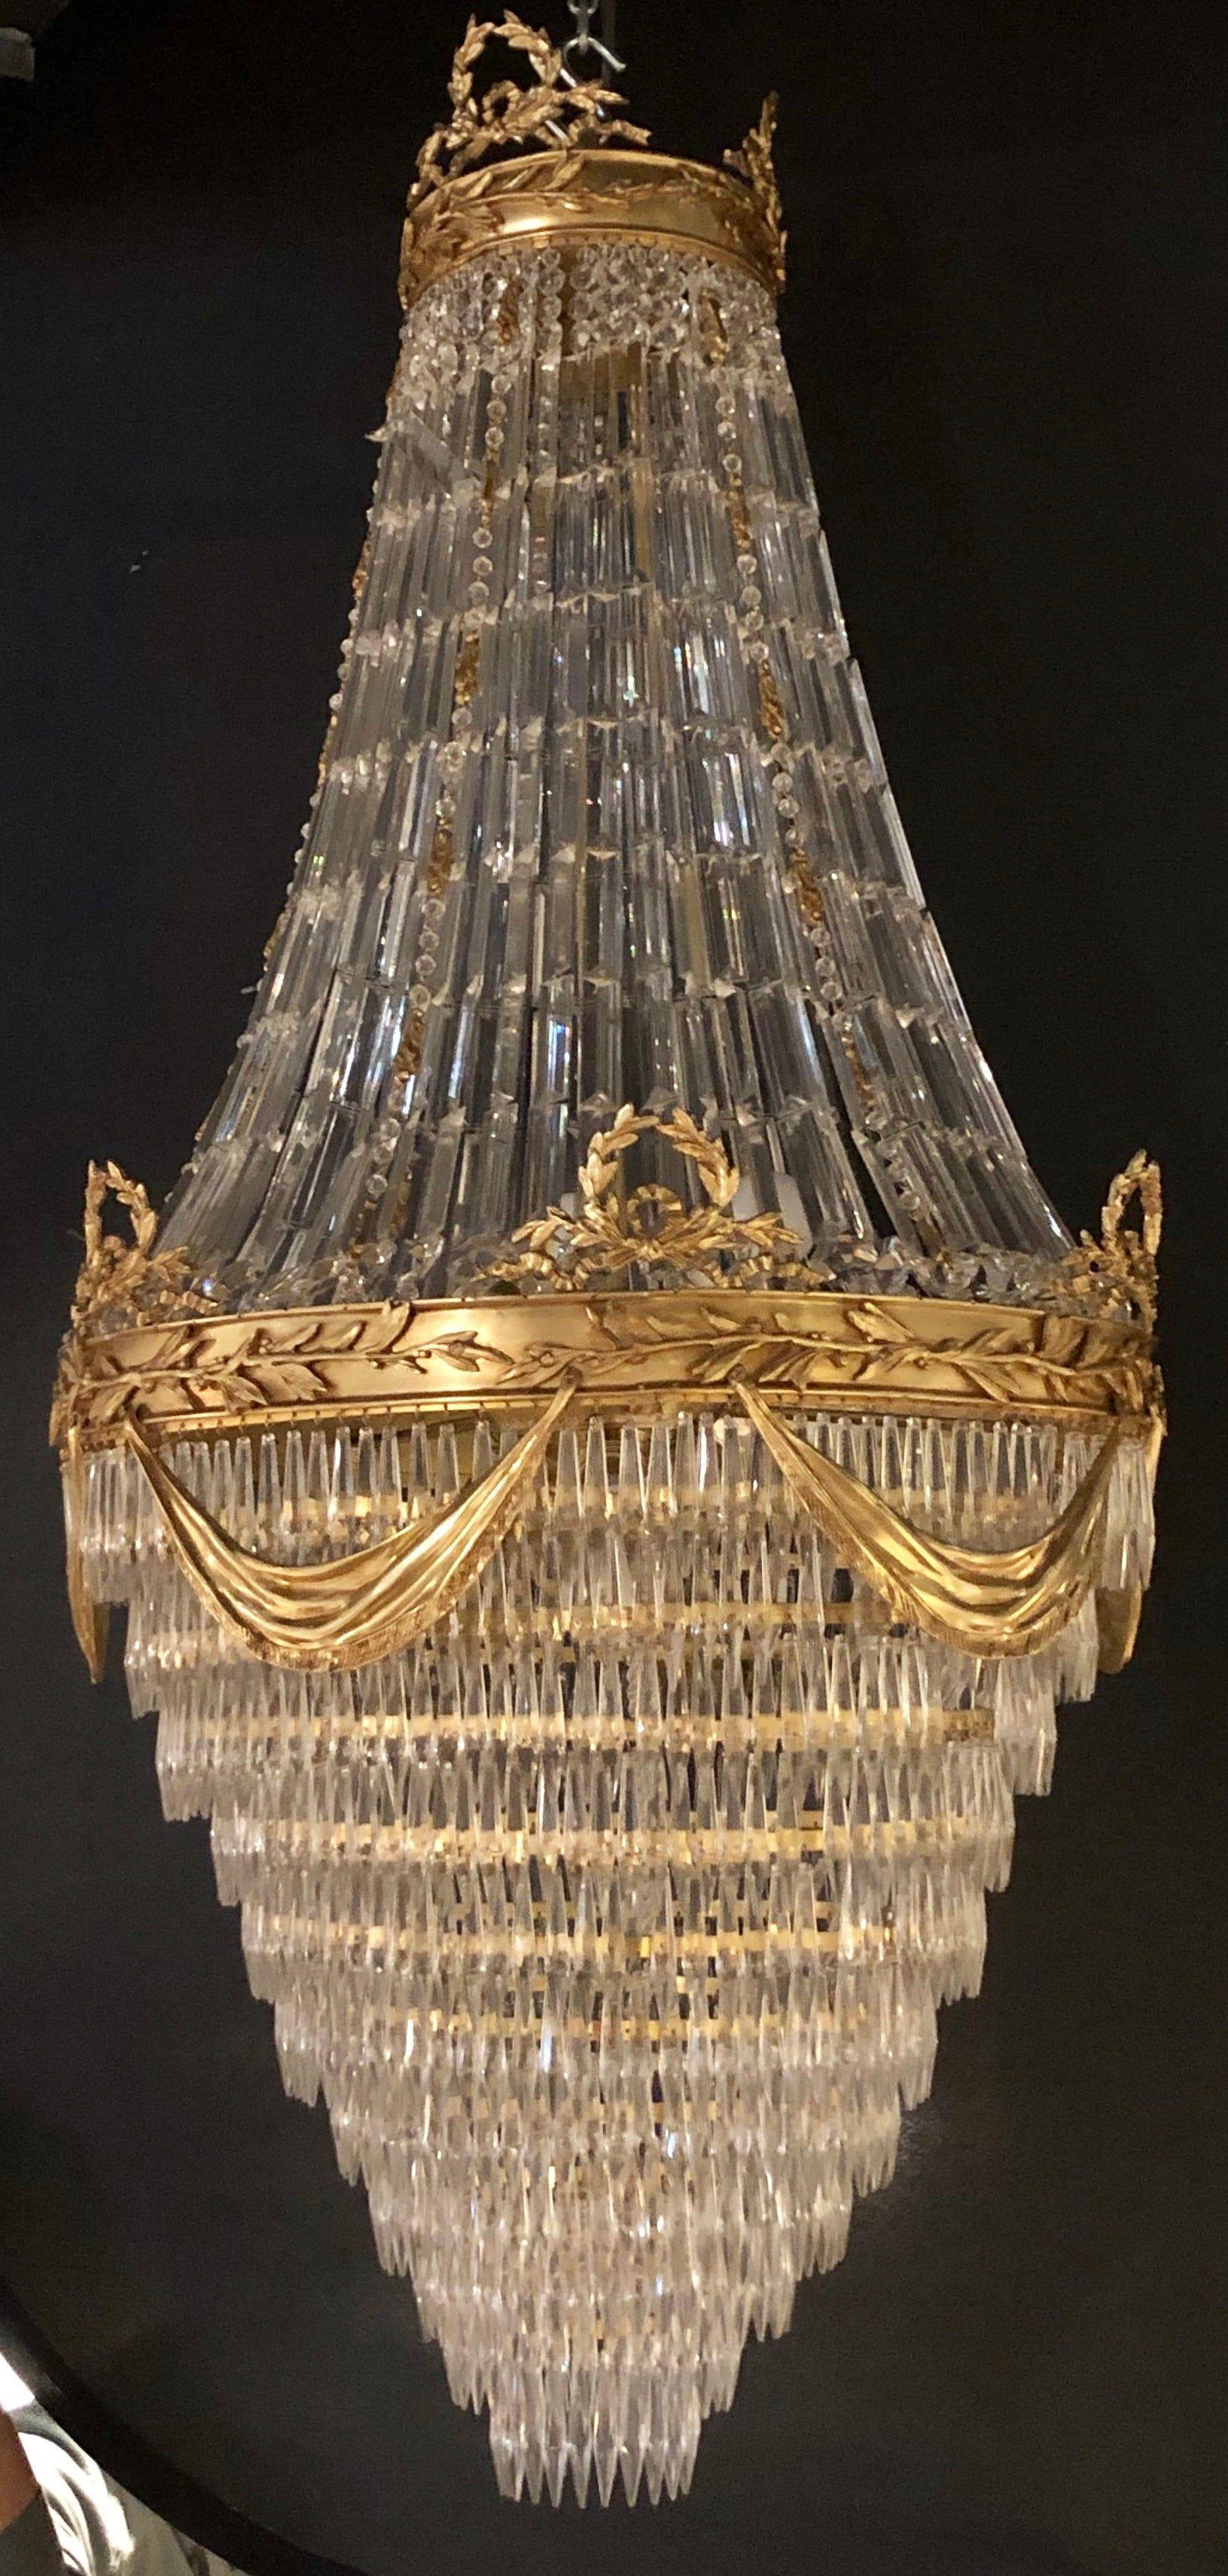 Ein Paar spektakuläre Kristall-Kronleuchter im Louis XVI-Stil in Bronze mit Blumen- und Säbeldesign in Draperieform. Diese großen und beeindruckenden Kronleuchter wurden kürzlich neu verkabelt und sind bereit, in jedem Palast zu hängen, der einem